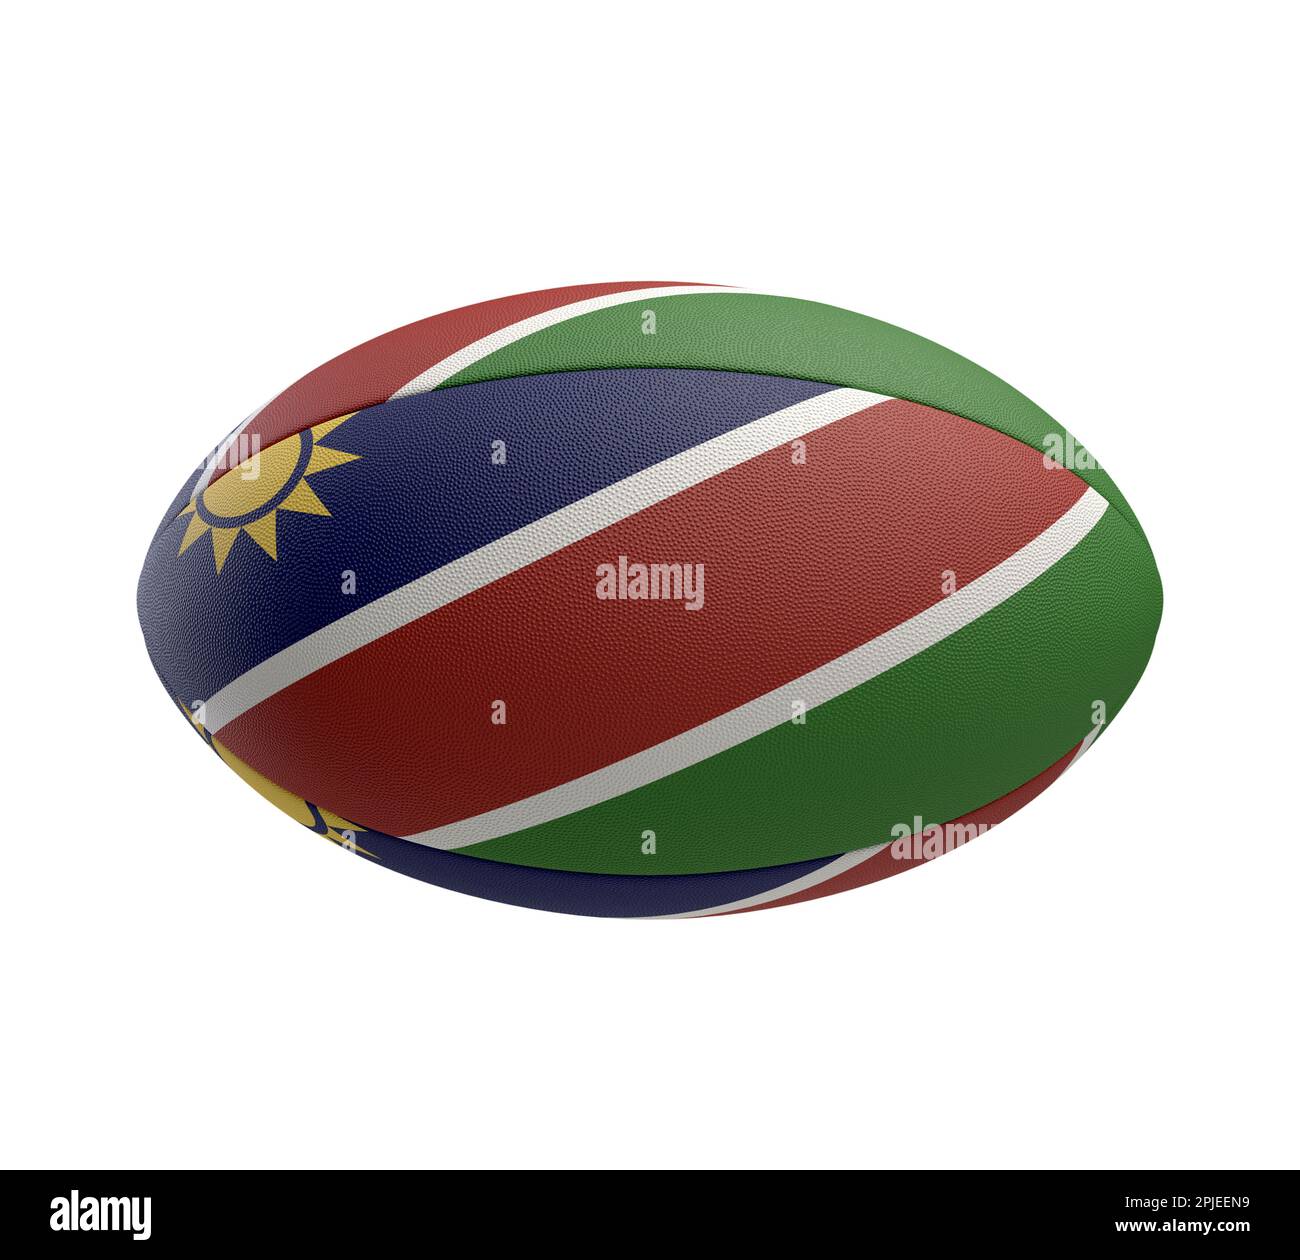 Ein weiß strukturierter Rugbyball mit Farbdesign, das die Nationalflagge Namibias auf einem isolierten Hintergrund darstellt - 3D-Rendering Stockfoto